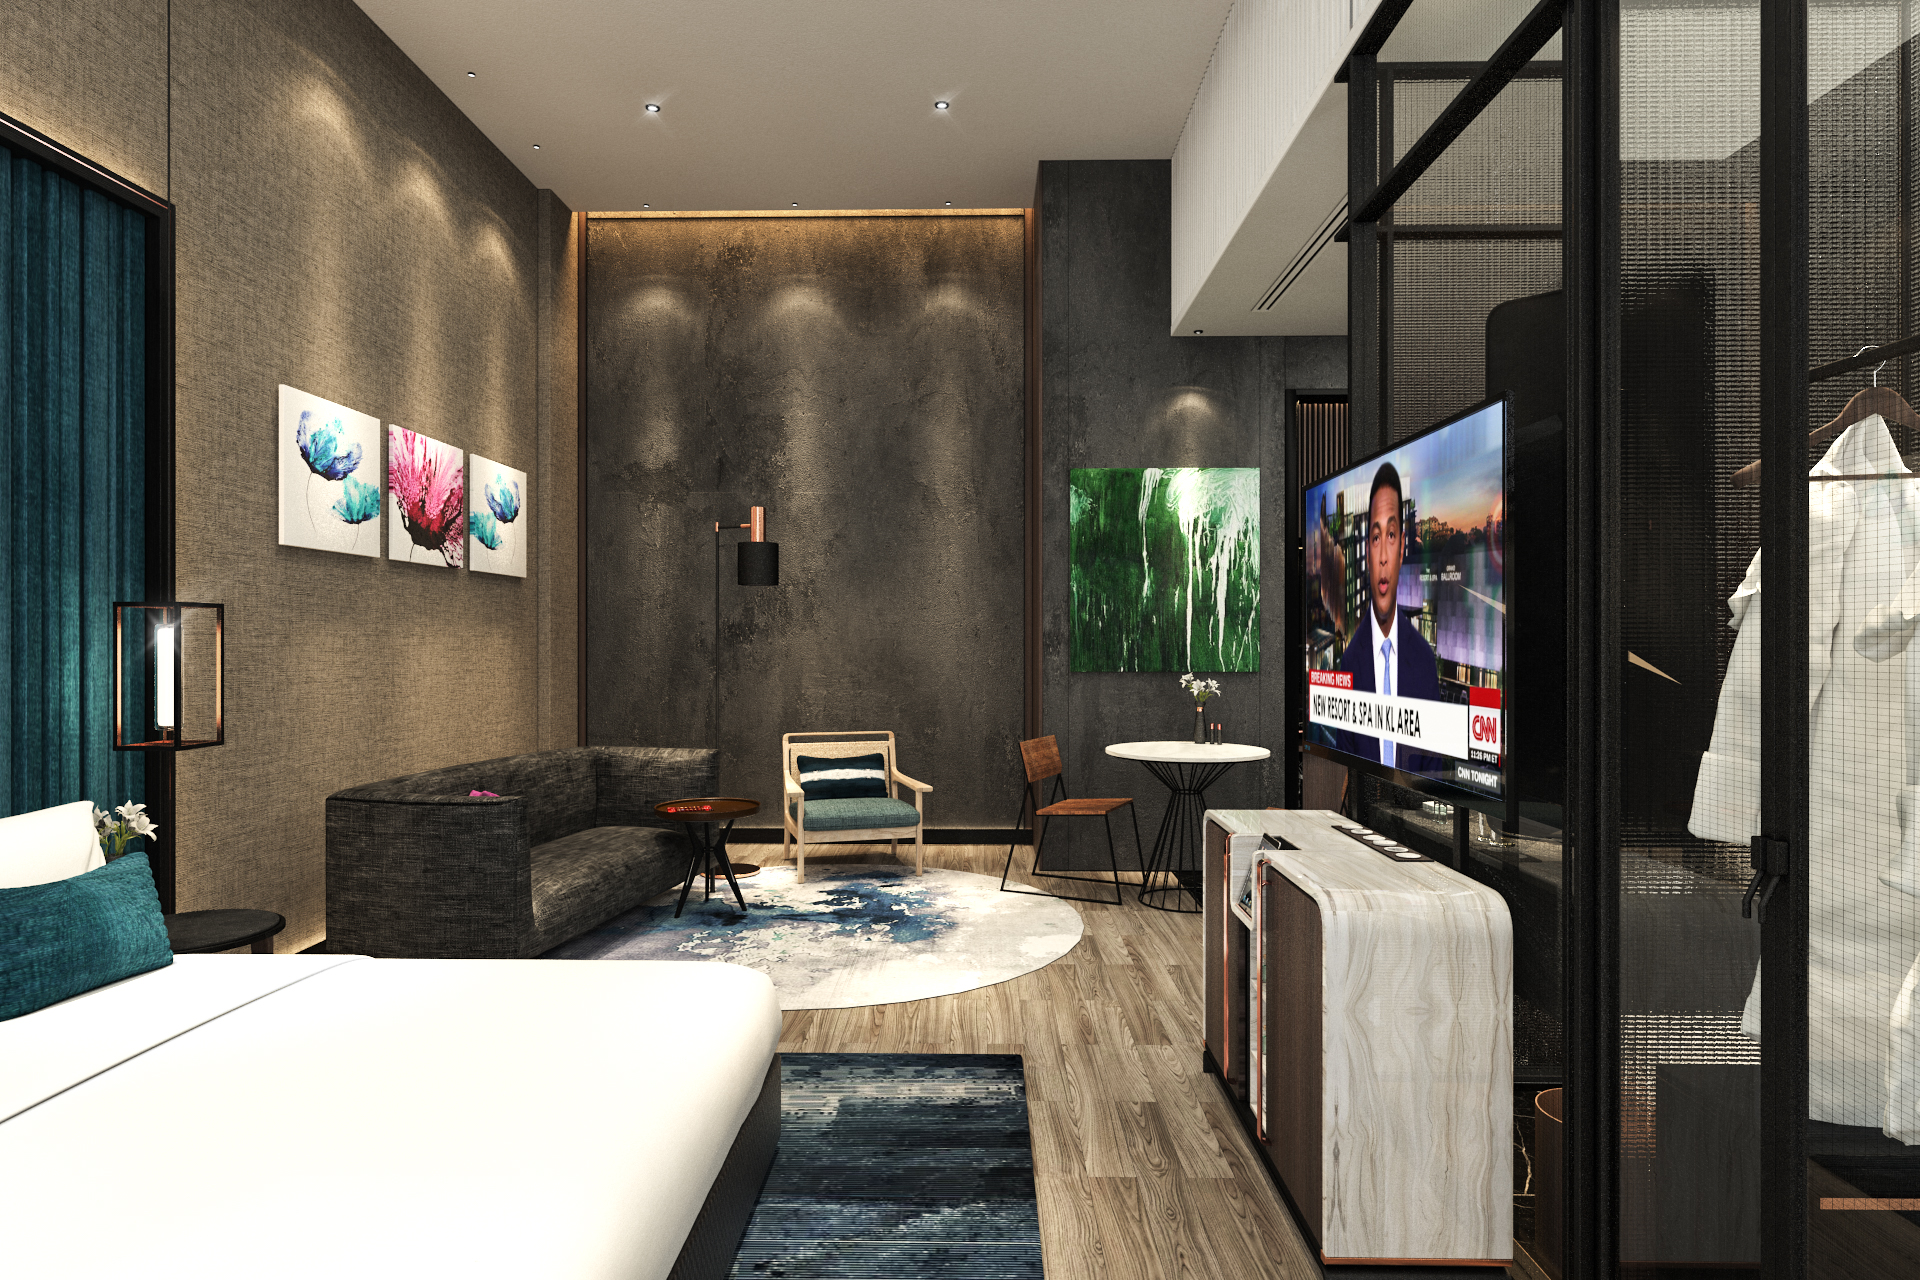 M Resort Hotel menawarkan pelbagai jenis bilik untuk keperluan tetamu. - FOTO M Resort Hotel